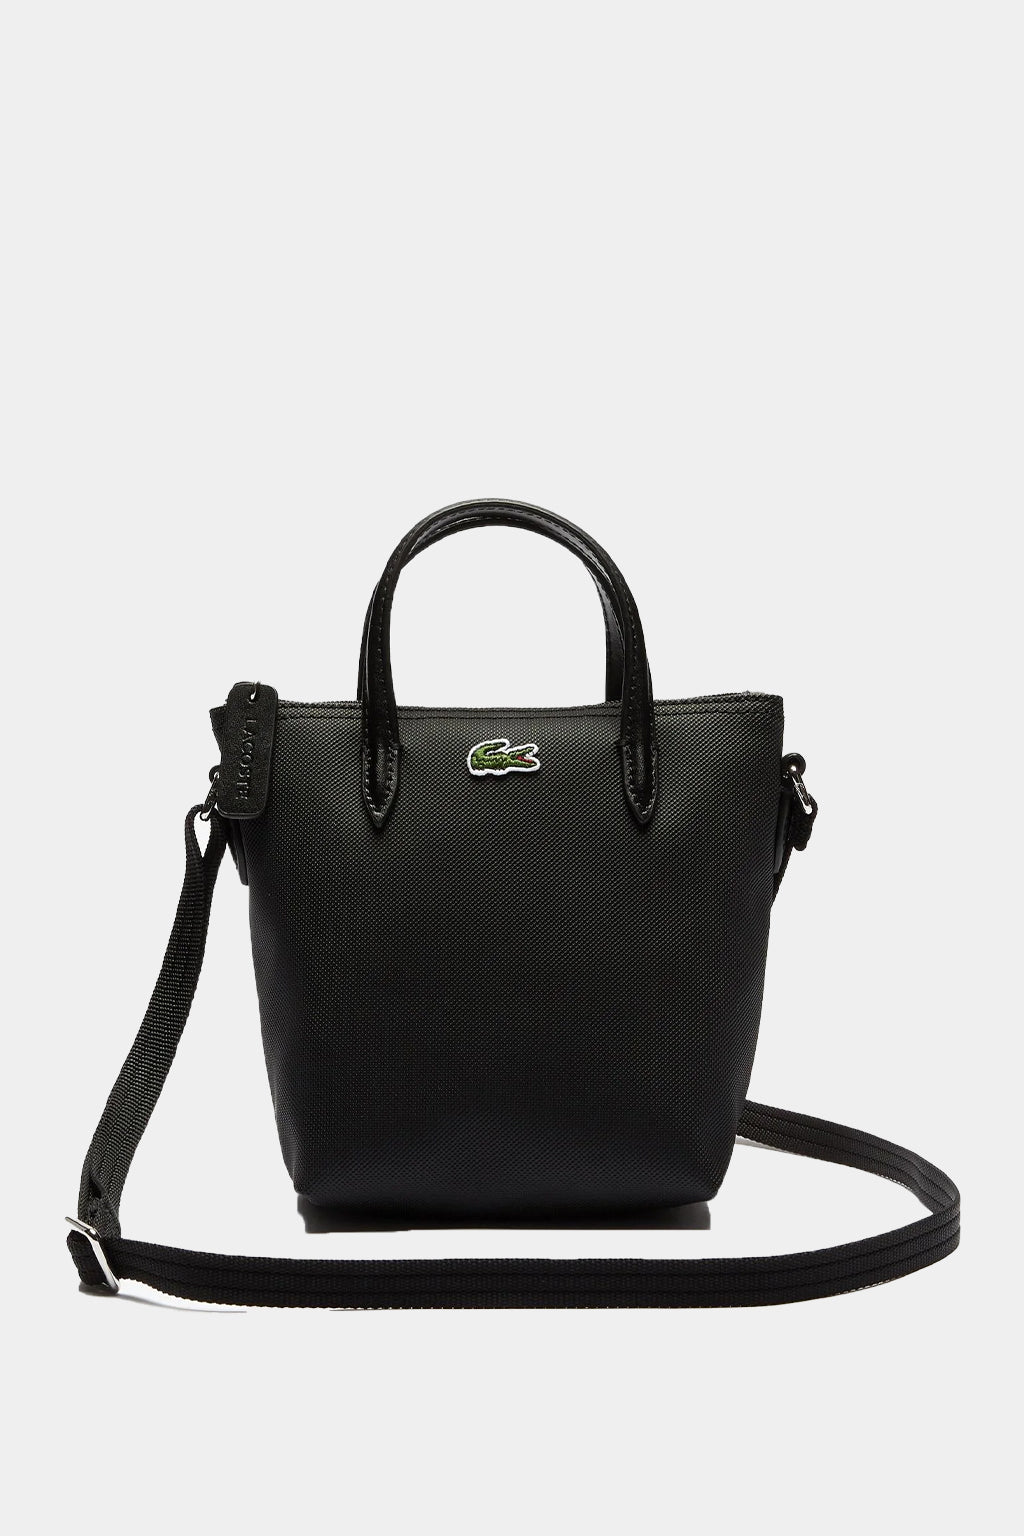 Lacoste - L.12.12 Concept Women's Bag